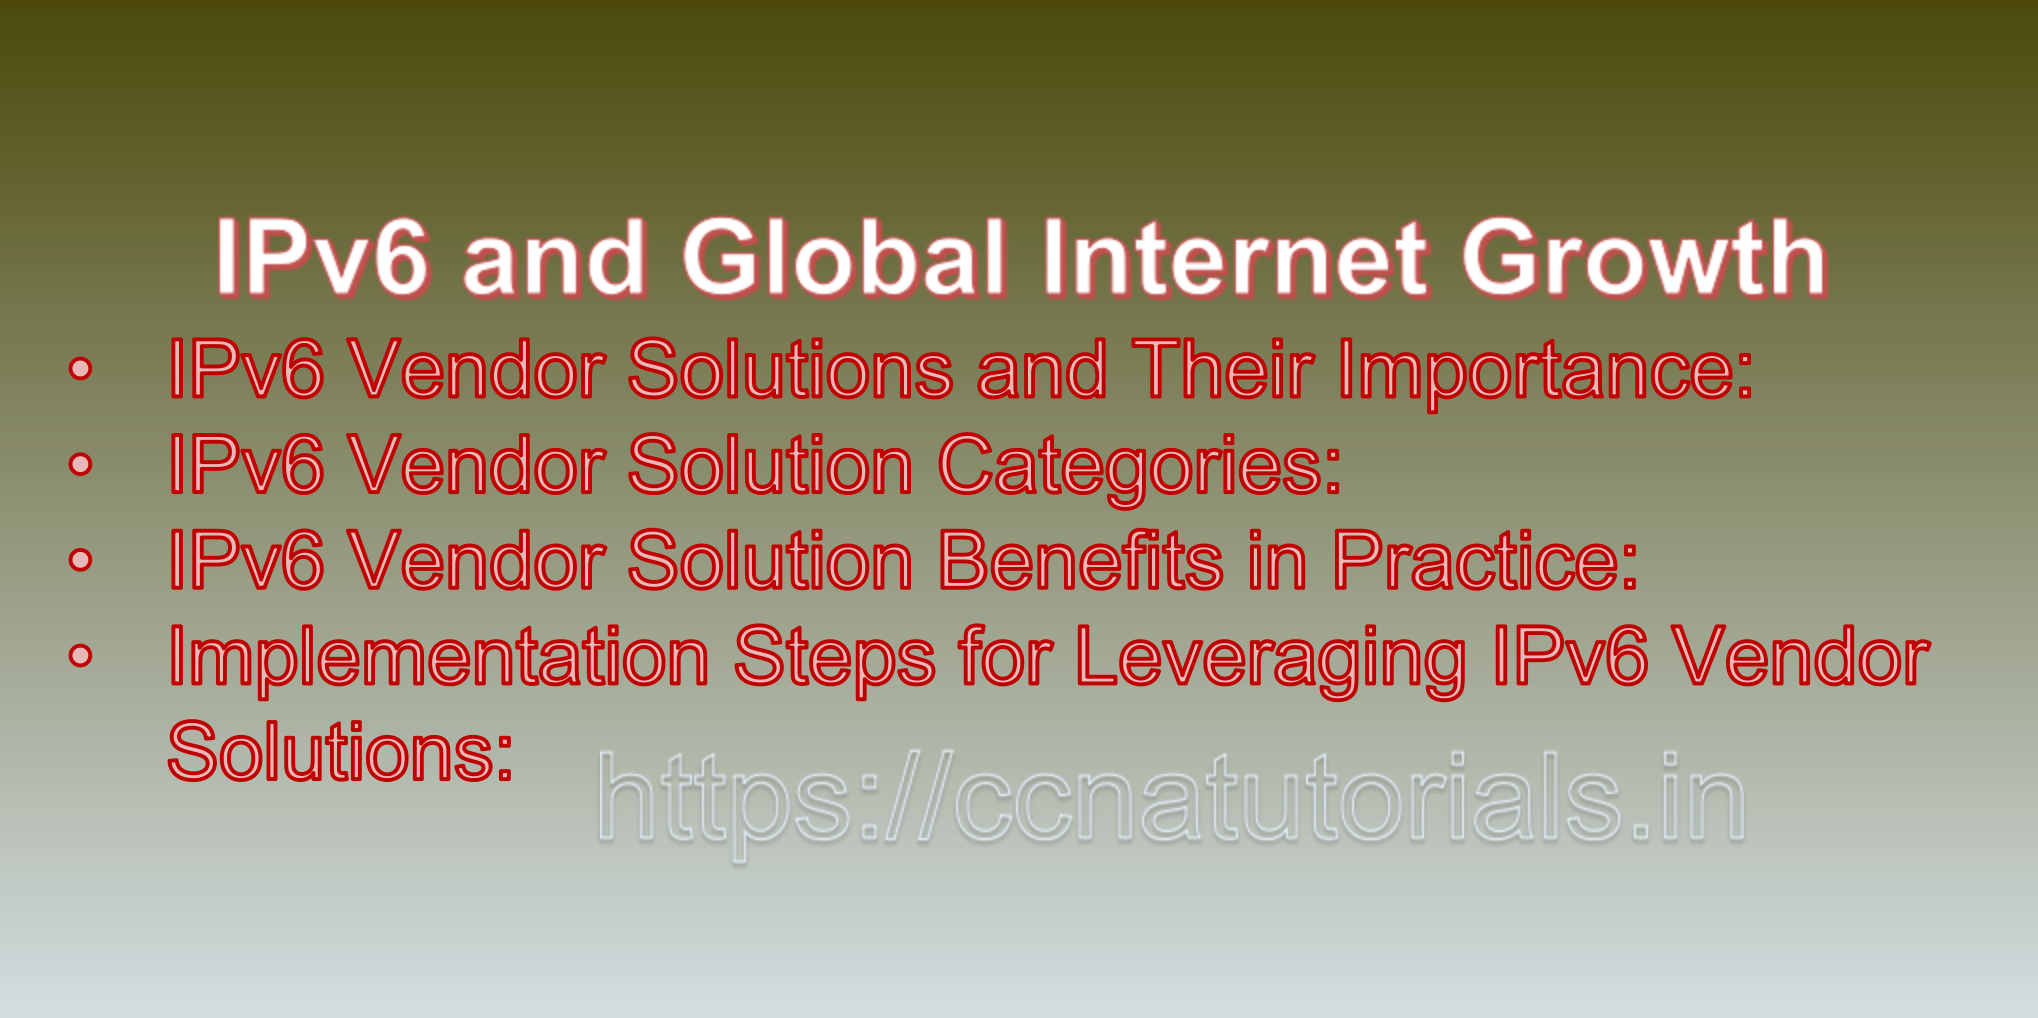 IPv6 Vendor Solutions and Offerings, ccna, ccna tutorials